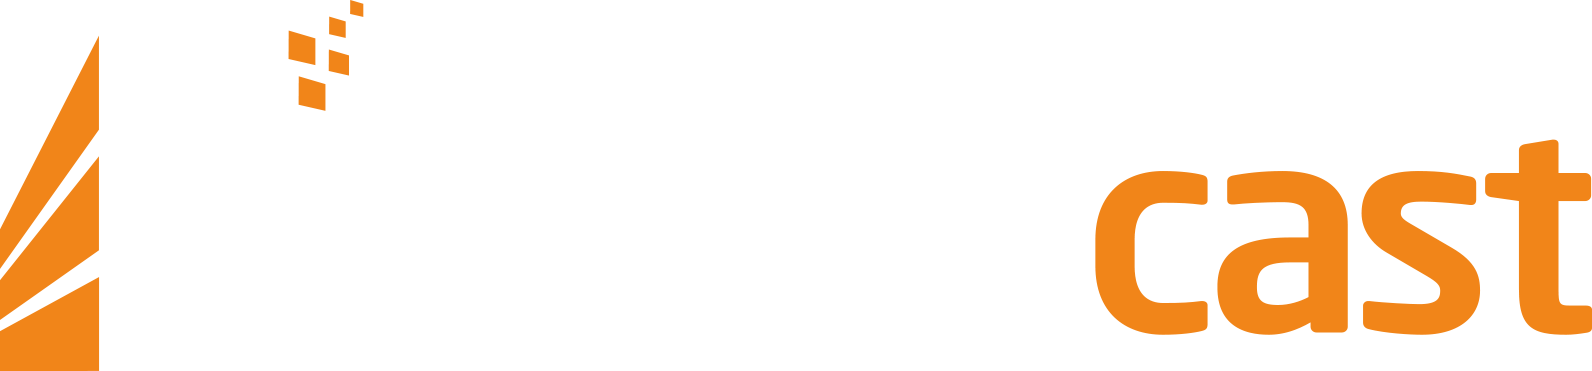 Runecast Logo White